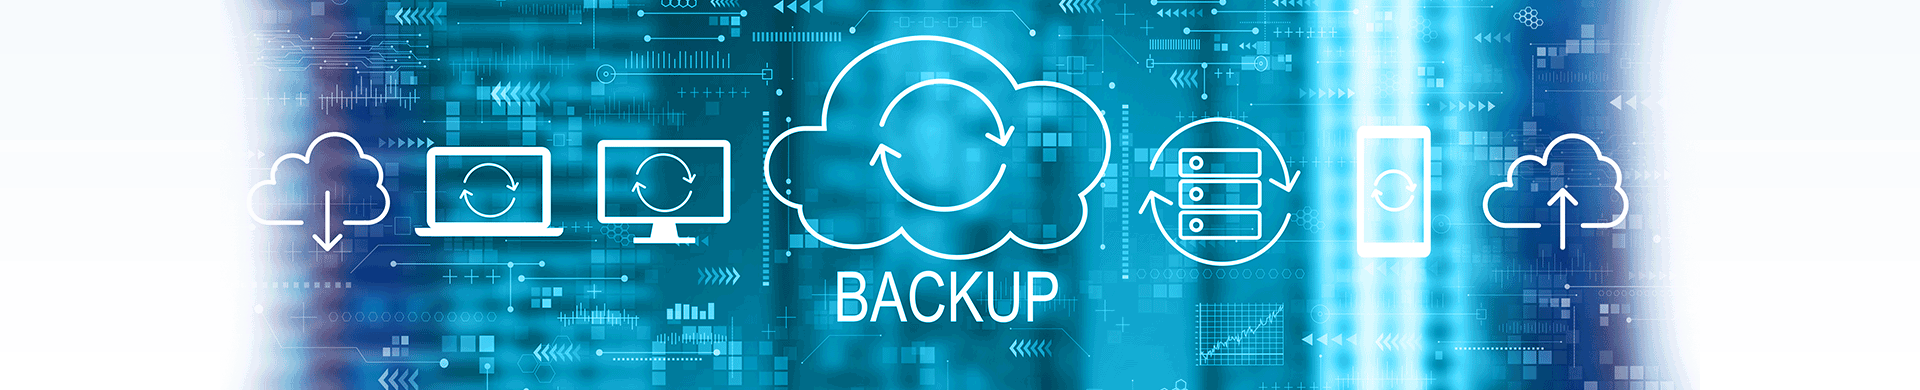 Klaes Online Backup - Ihre Datensicherung in der Cloud